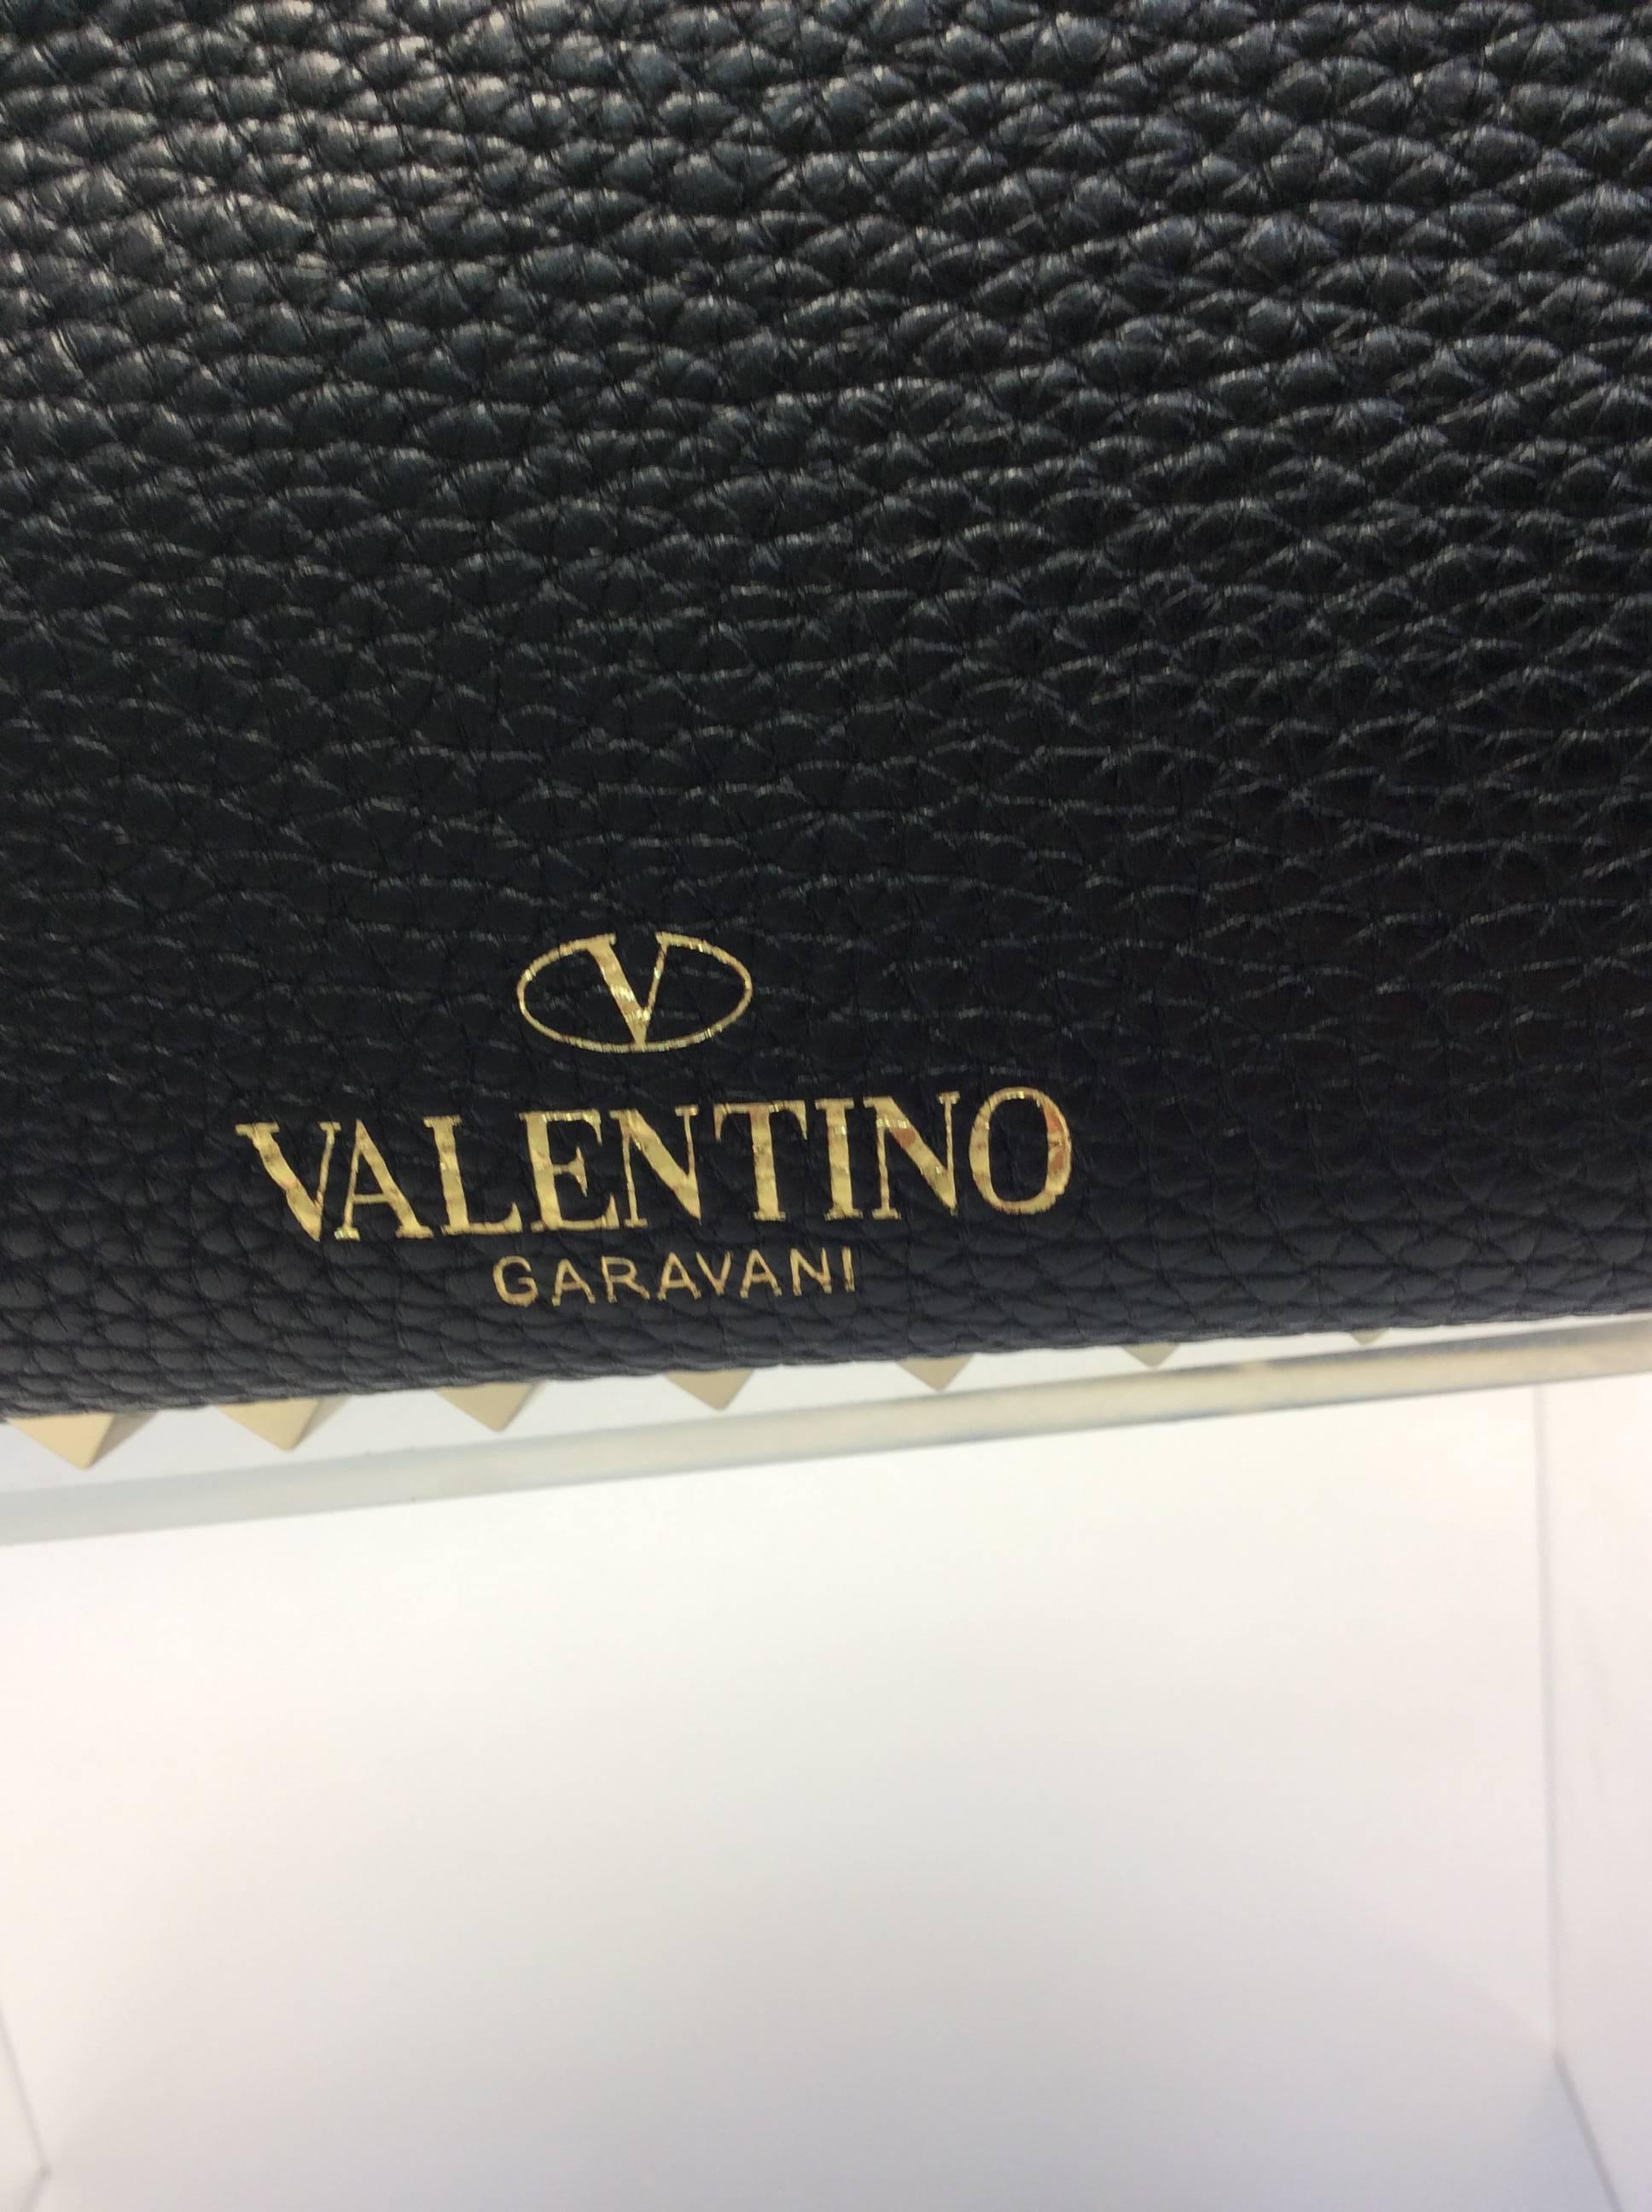 Valentino Black Leather Studded Shoulder Bag For Sale 5